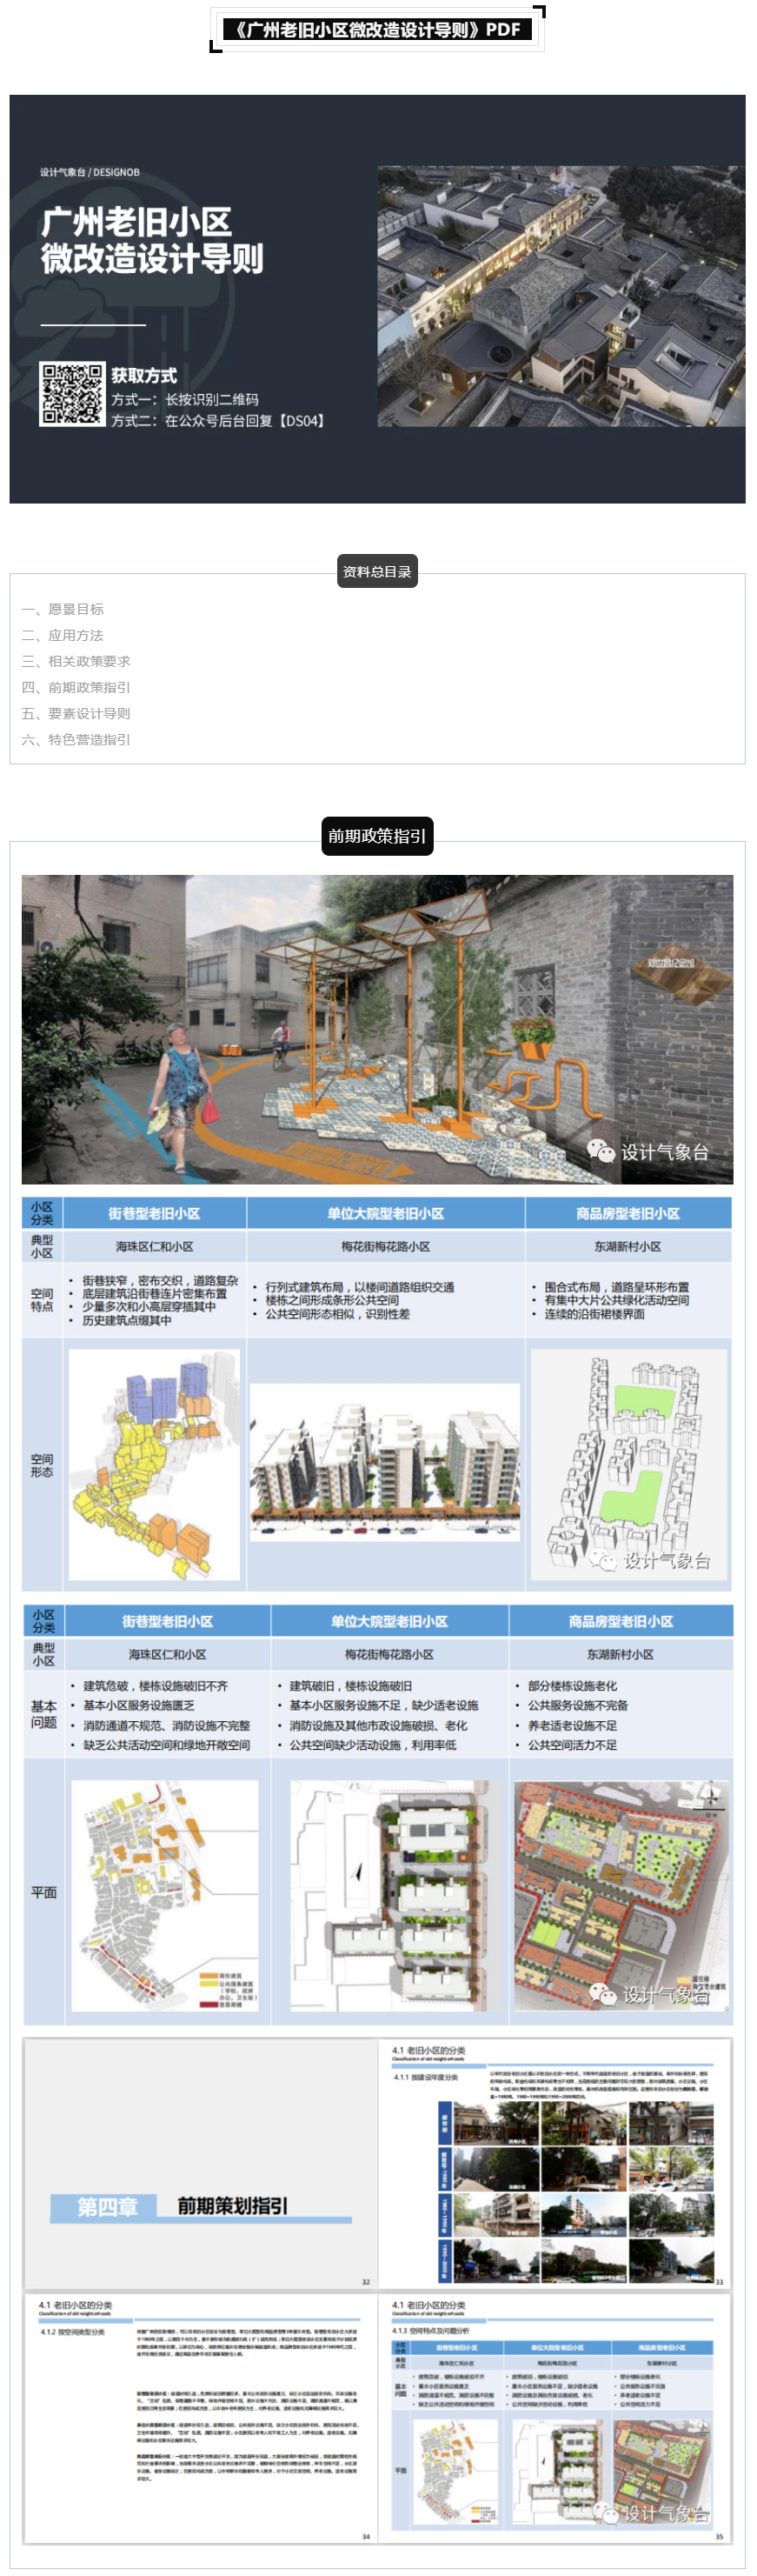 《广州老旧小区微改造设计导则》PDF-1